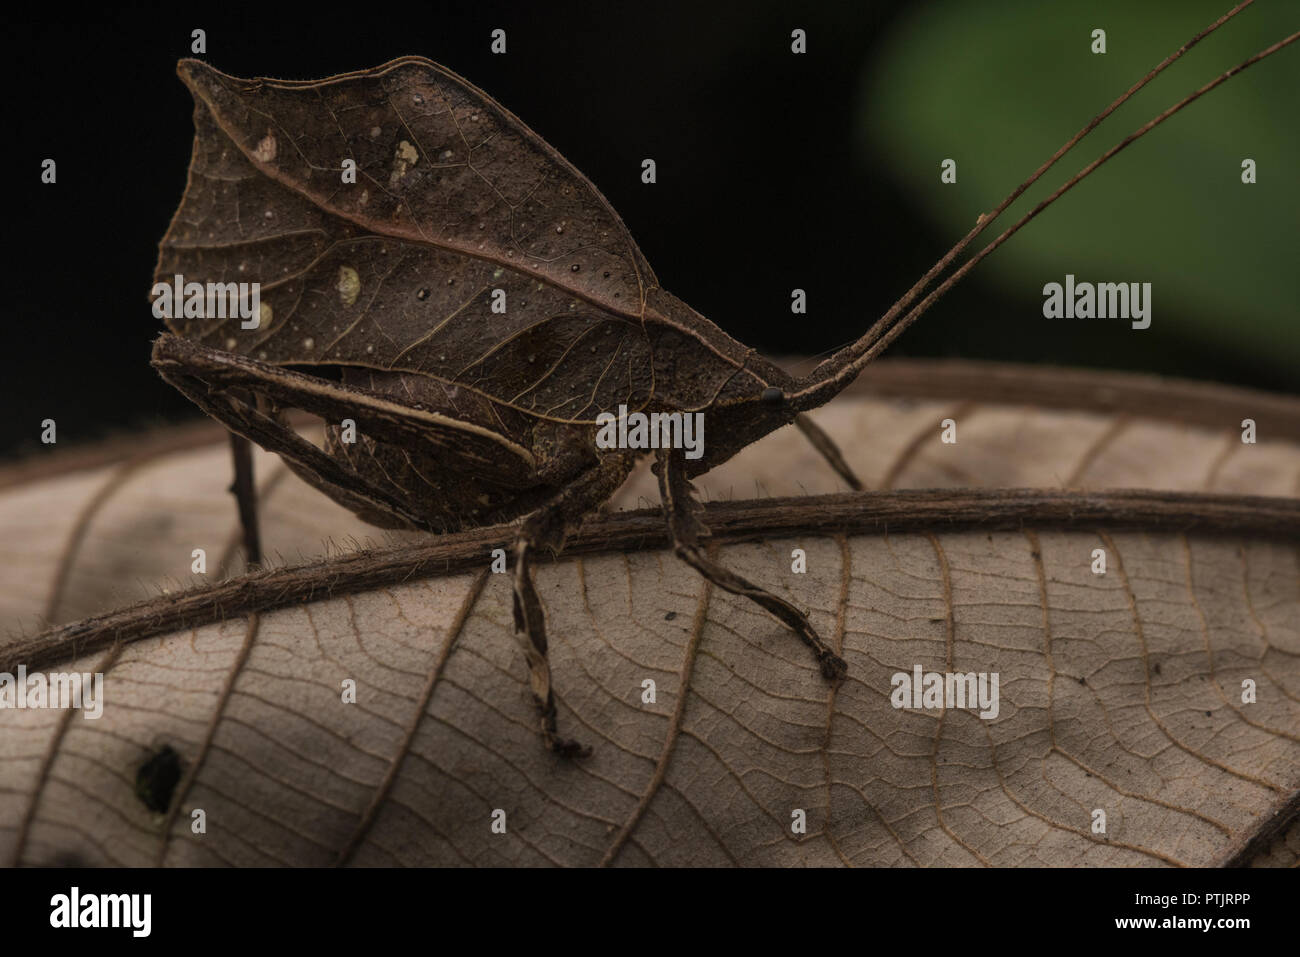 Un katydid imita una foglia morta nella giungla al fine di rimanere nascosto dai predatori. Foto Stock